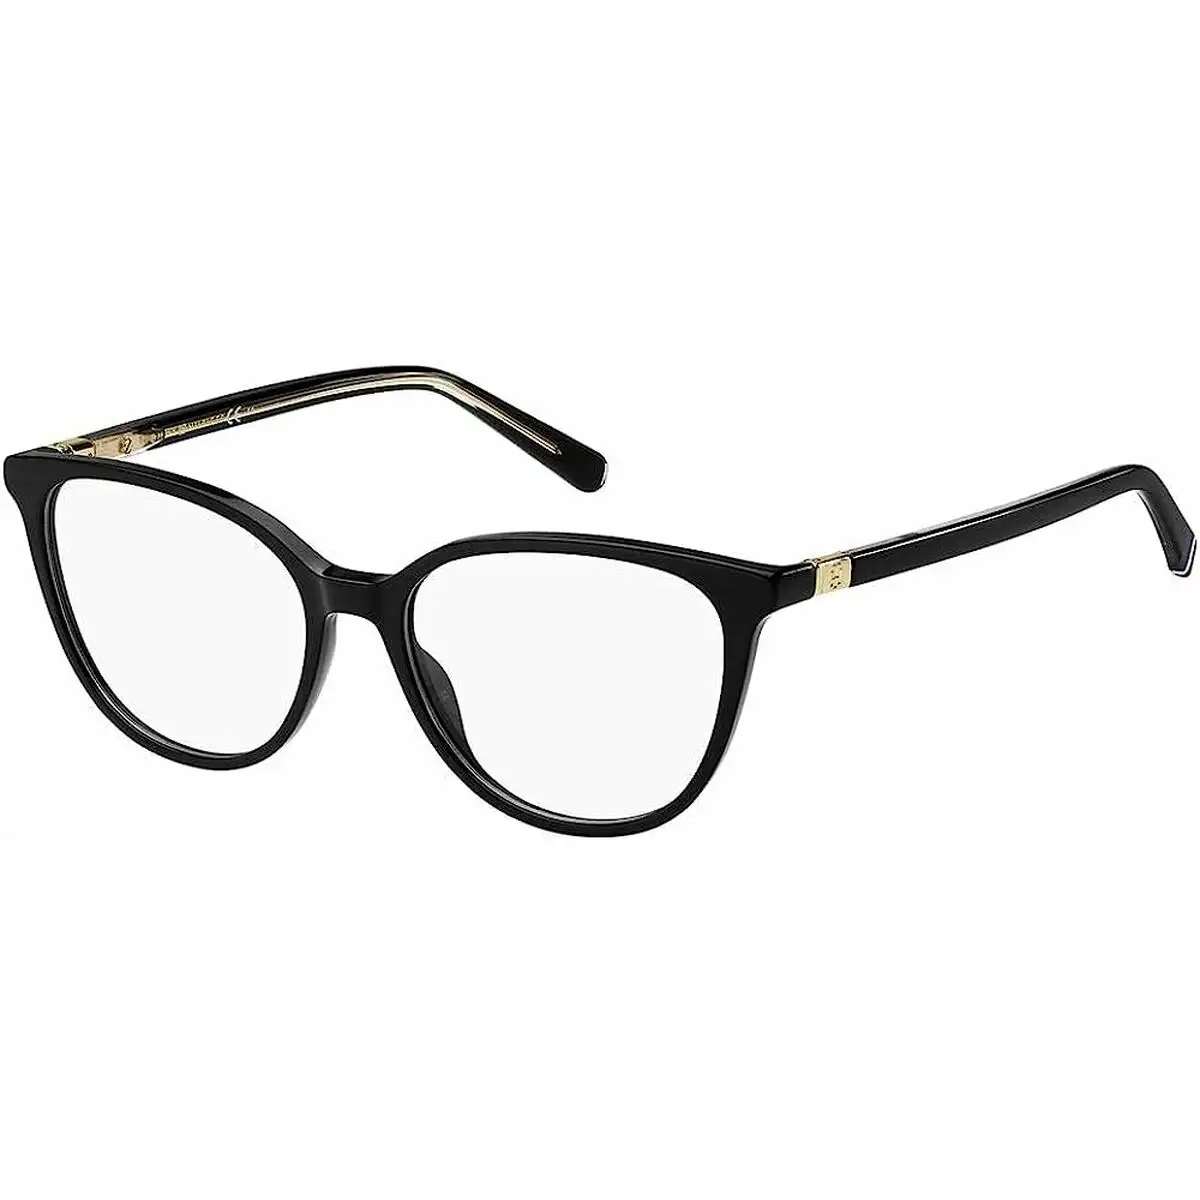 Monture de lunettes femme tommy hilfiger th 1964_3166. DIAYTAR SENEGAL - L'Art du Shopping Sublime. Naviguez à travers notre catalogue et choisissez parmi des produits qui ajoutent une touche raffinée à votre vie quotidienne.